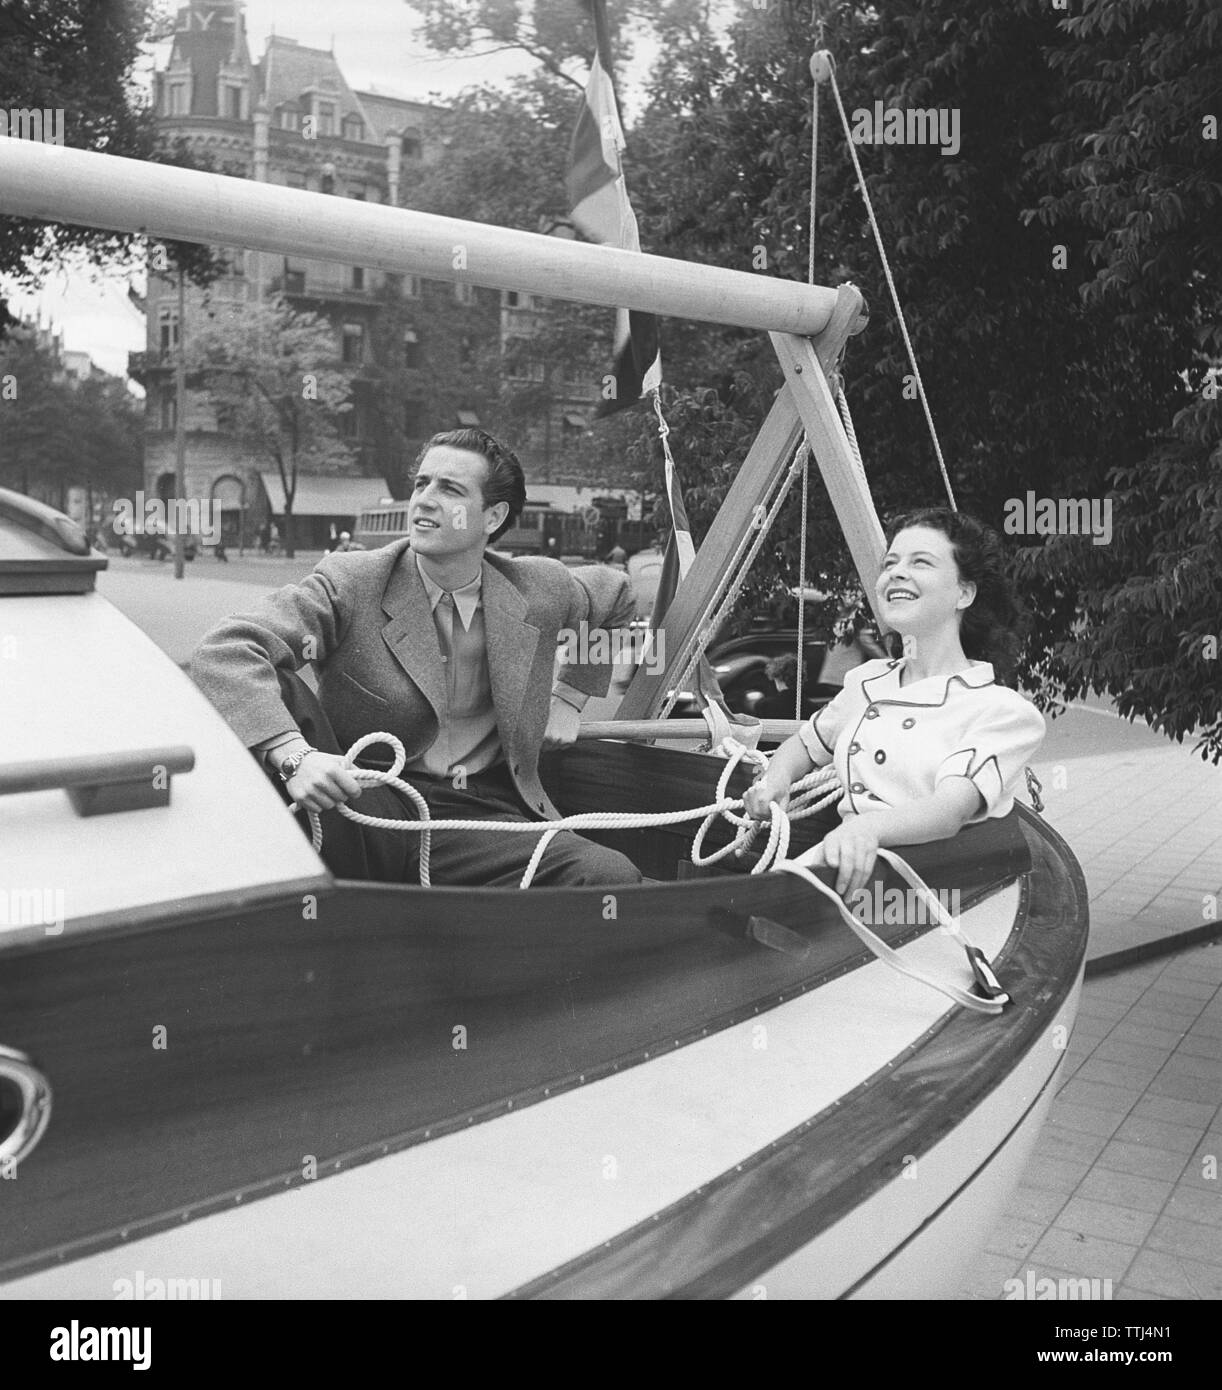 1940 Sommer. Ein junges Paar in einem Segelboot auf dem Trockenen. Sie haben das richtige Gespür für irgendwie Segeln. Schweden 1946 Kristoffersson ref U 88-5. Stockfoto